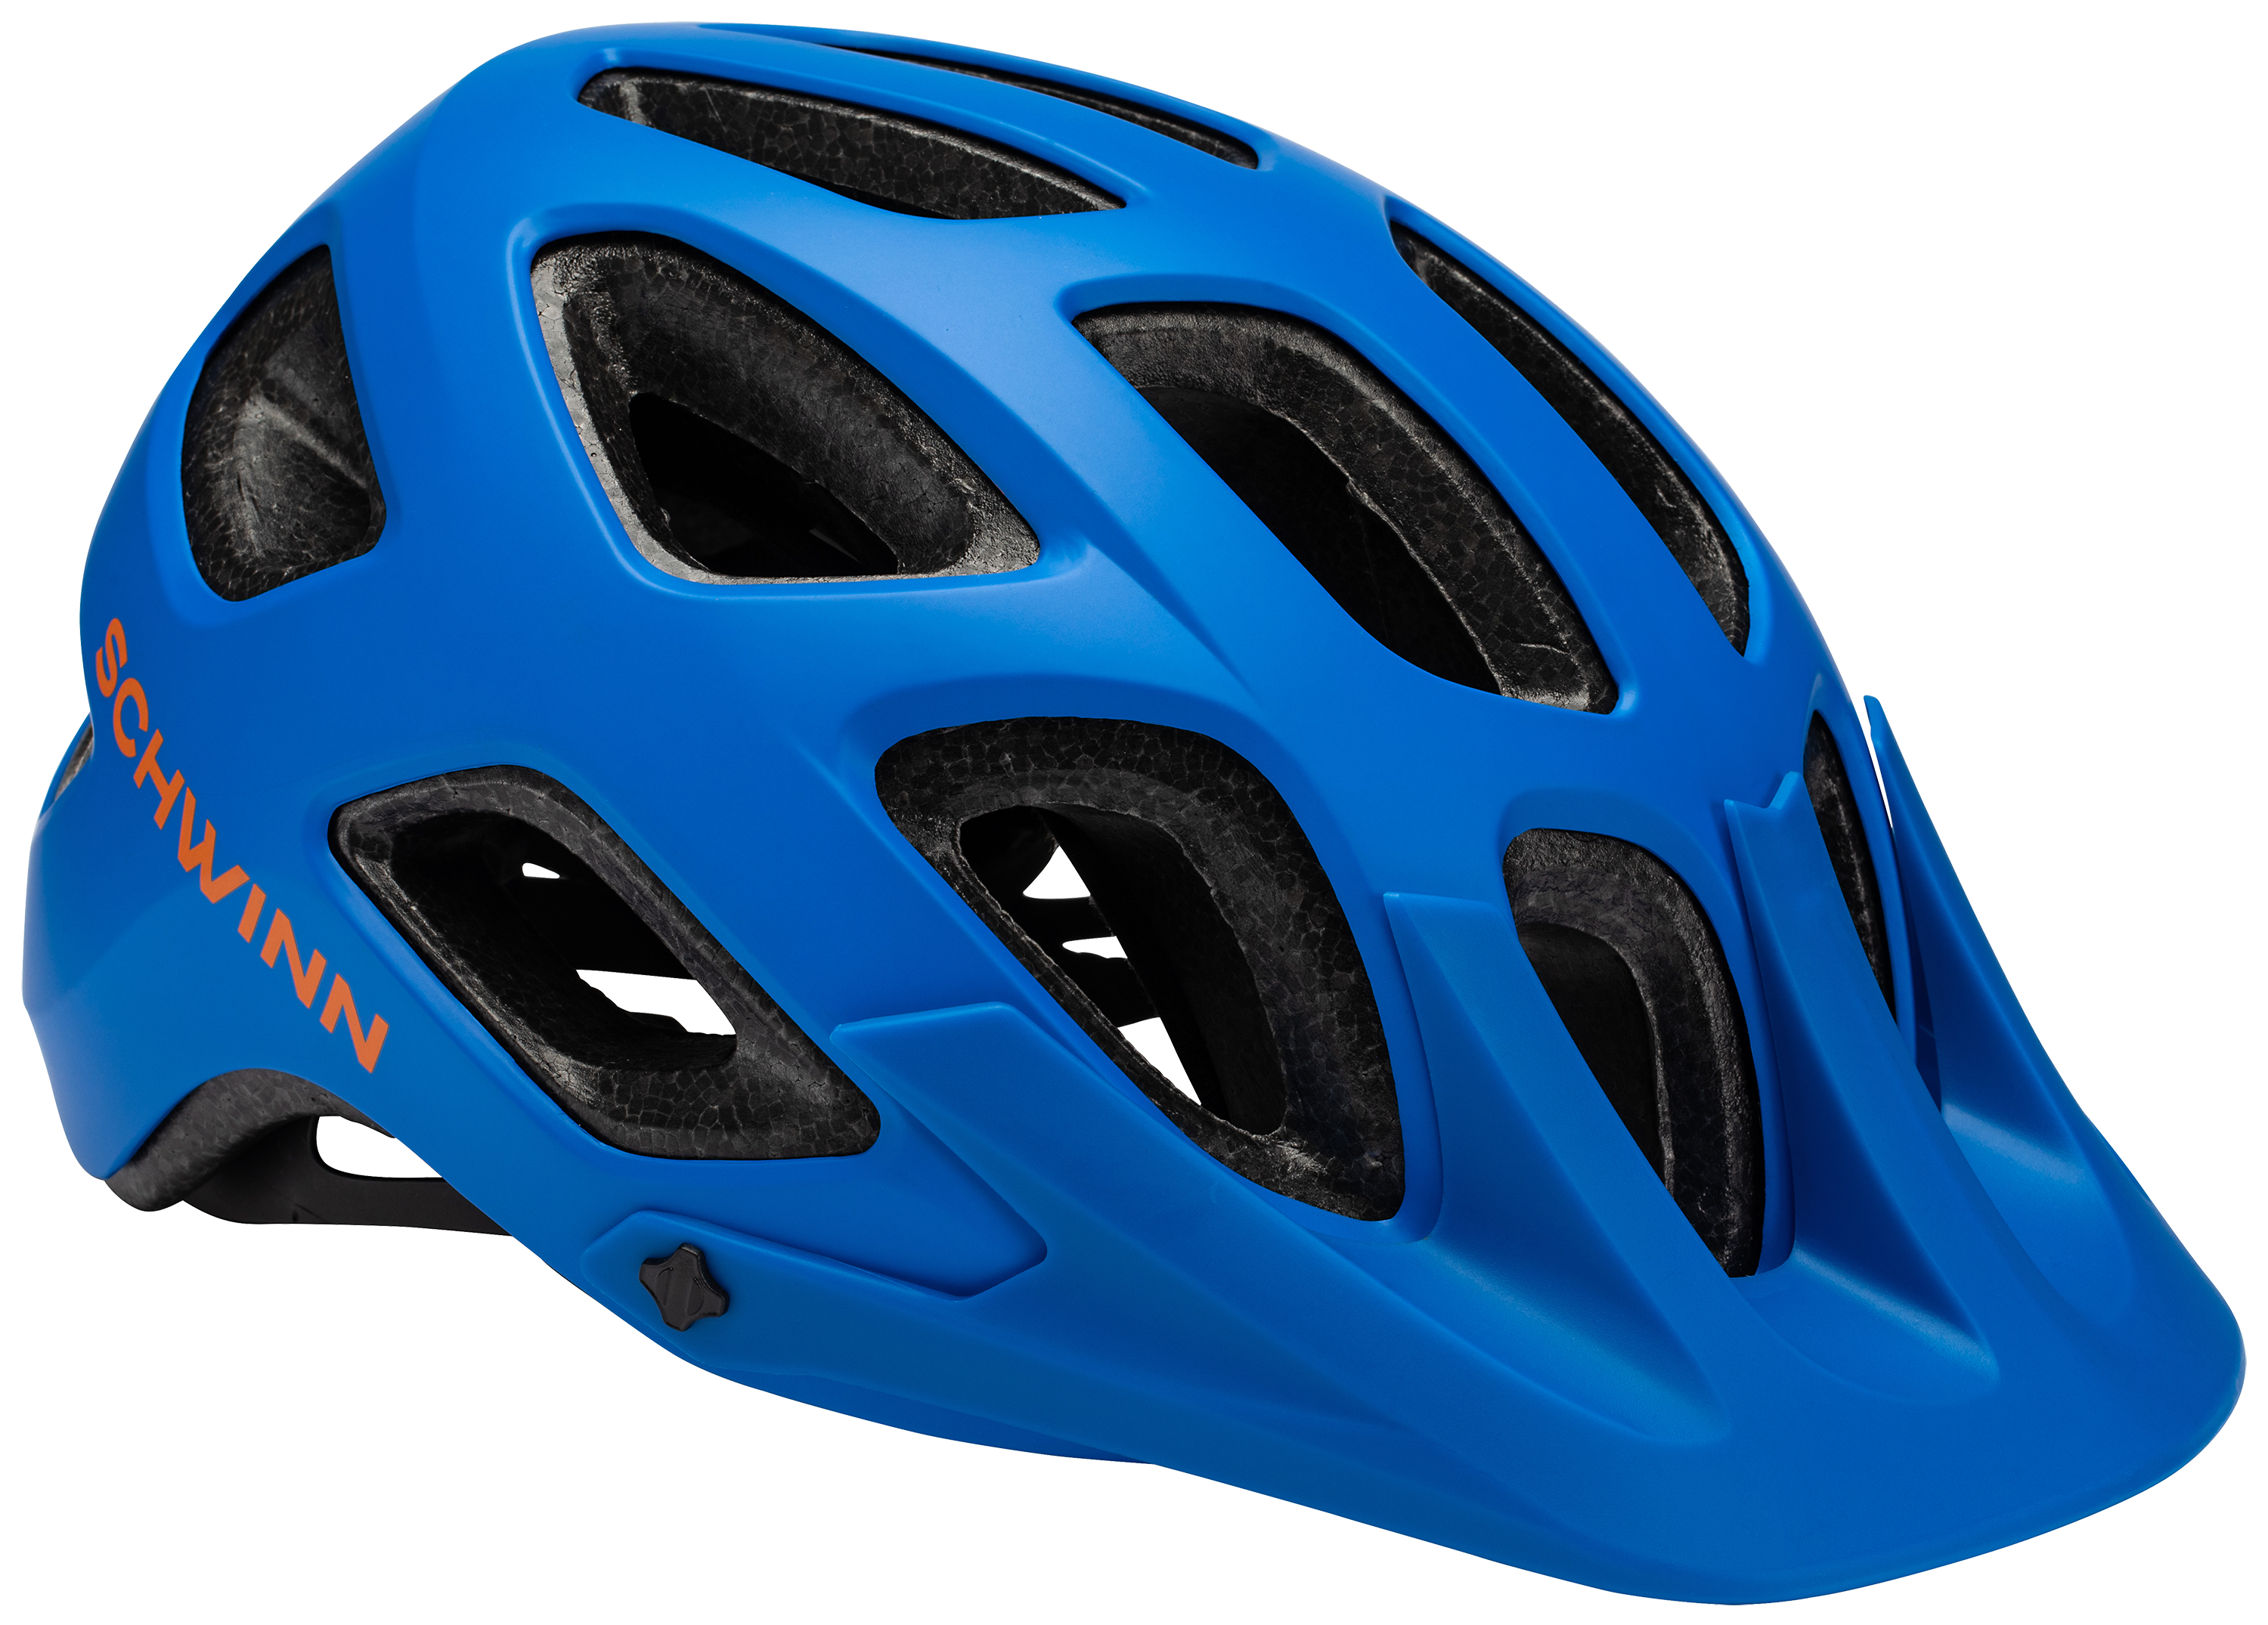 Schwinn Excursion Bike Helmet for Kids - Blue - Age 8-14